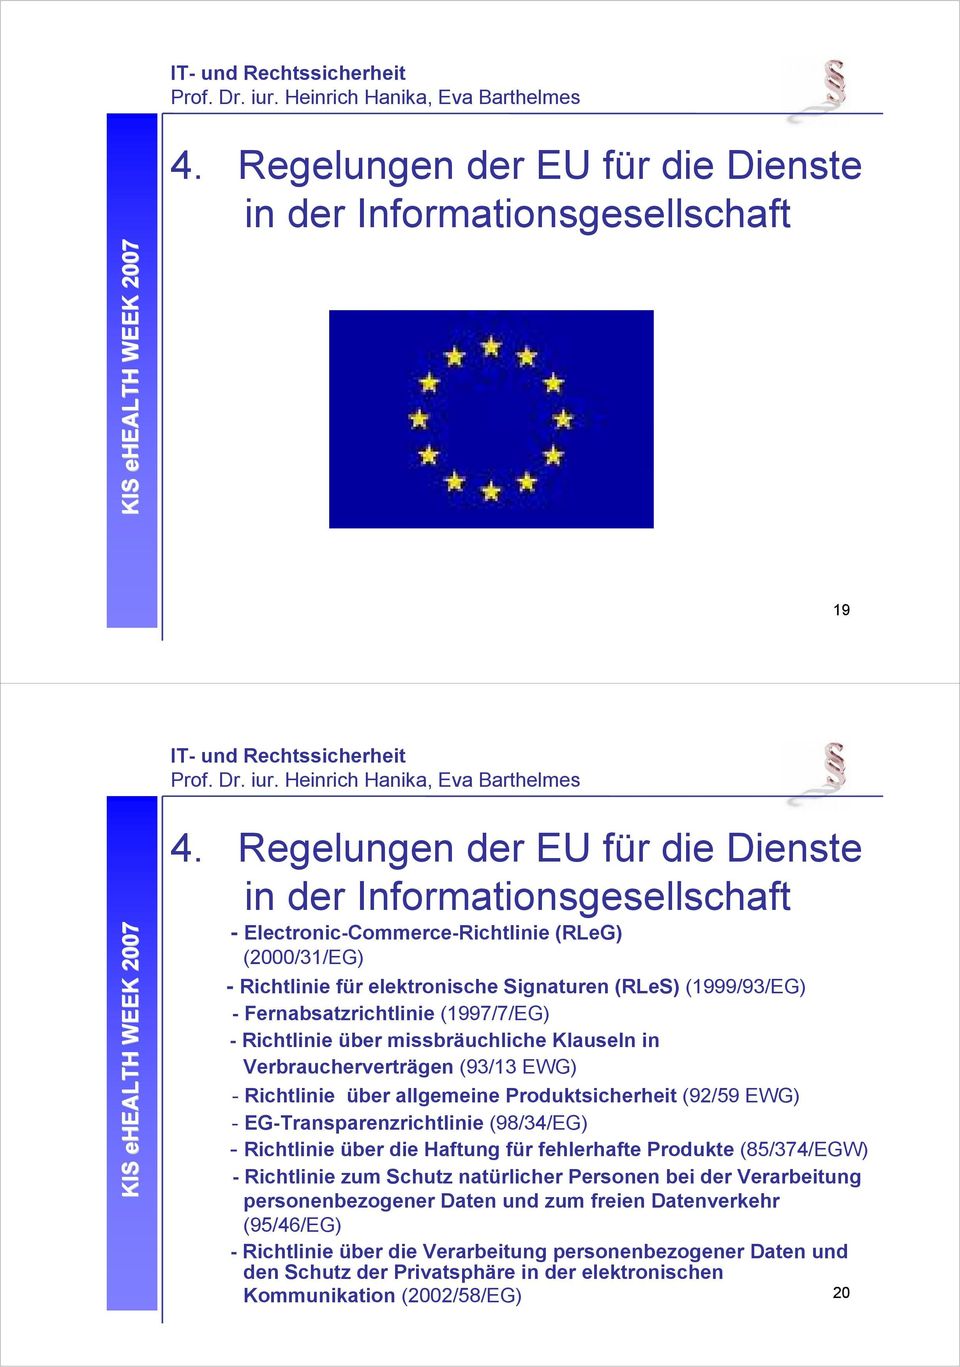 Fernabsatzrichtlinie (1997/7/EG) - Richtlinie über missbräuchliche Klauseln in Verbraucherverträgen (93/13 EWG) - Richtlinie über allgemeine Produktsicherheit (92/59 EWG) - EG-Transparenzrichtlinie